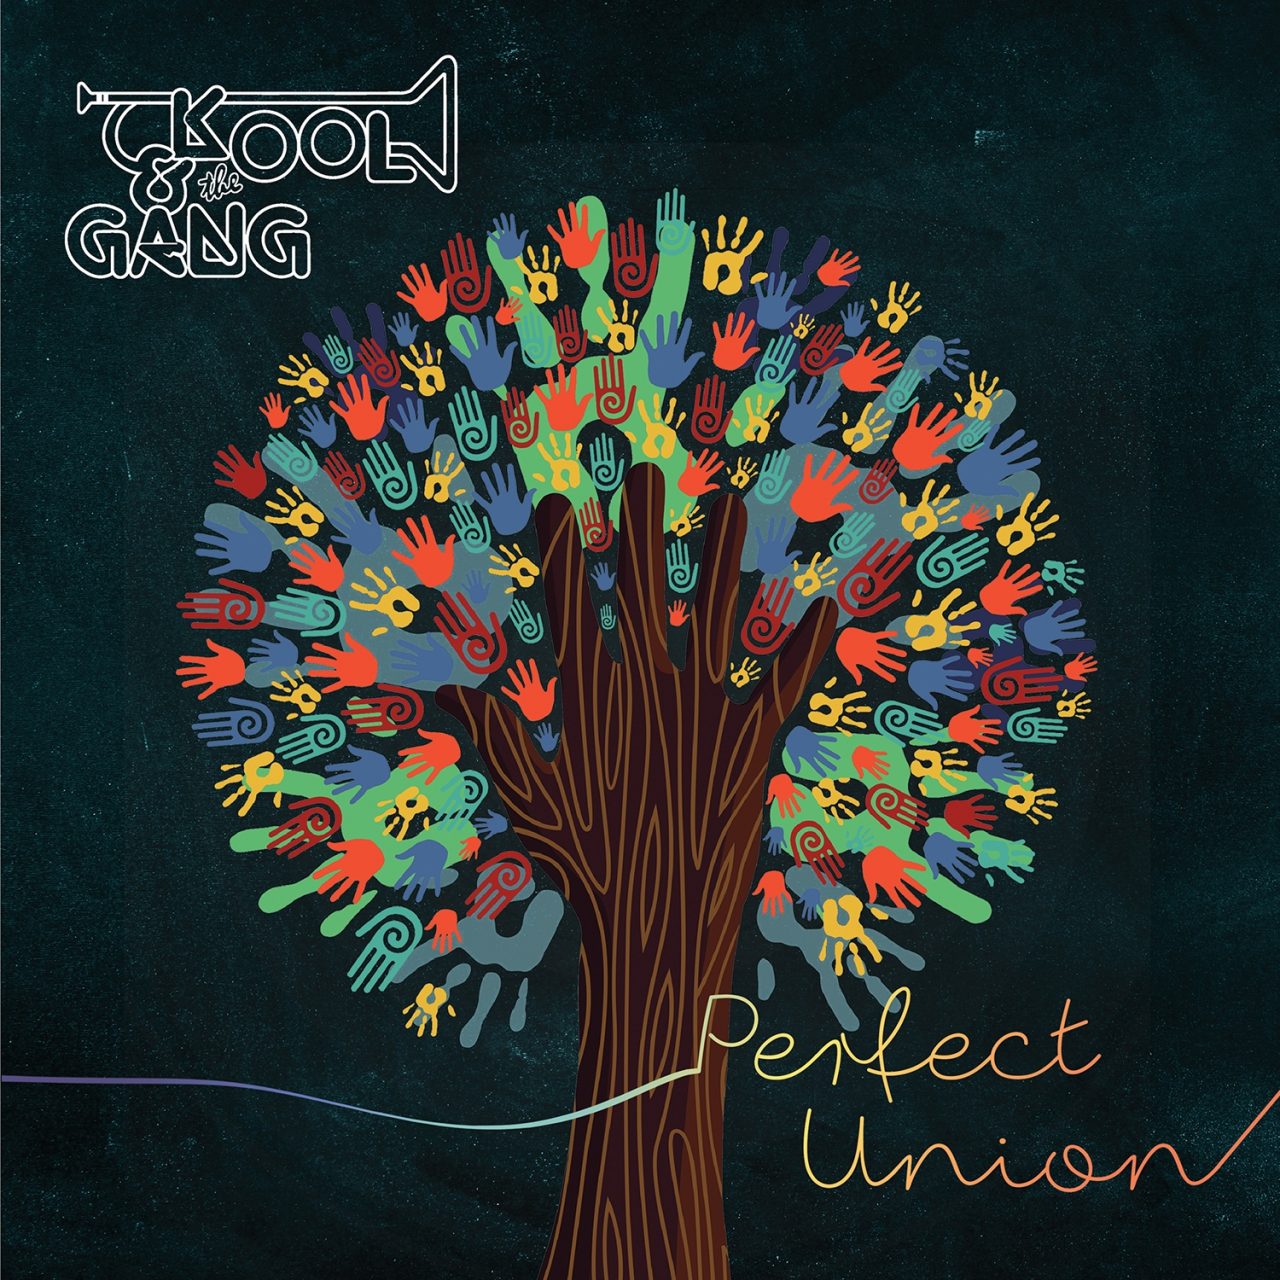 Der Hintergrund des Albumcovers "Perfect Union" von Kool And The Gang ist dunkel gestaltet. Im Vordergrund ist ein Baum aus Handabdrücken zu sehen. Sie sind in den verschiedensten Farben gehalten.